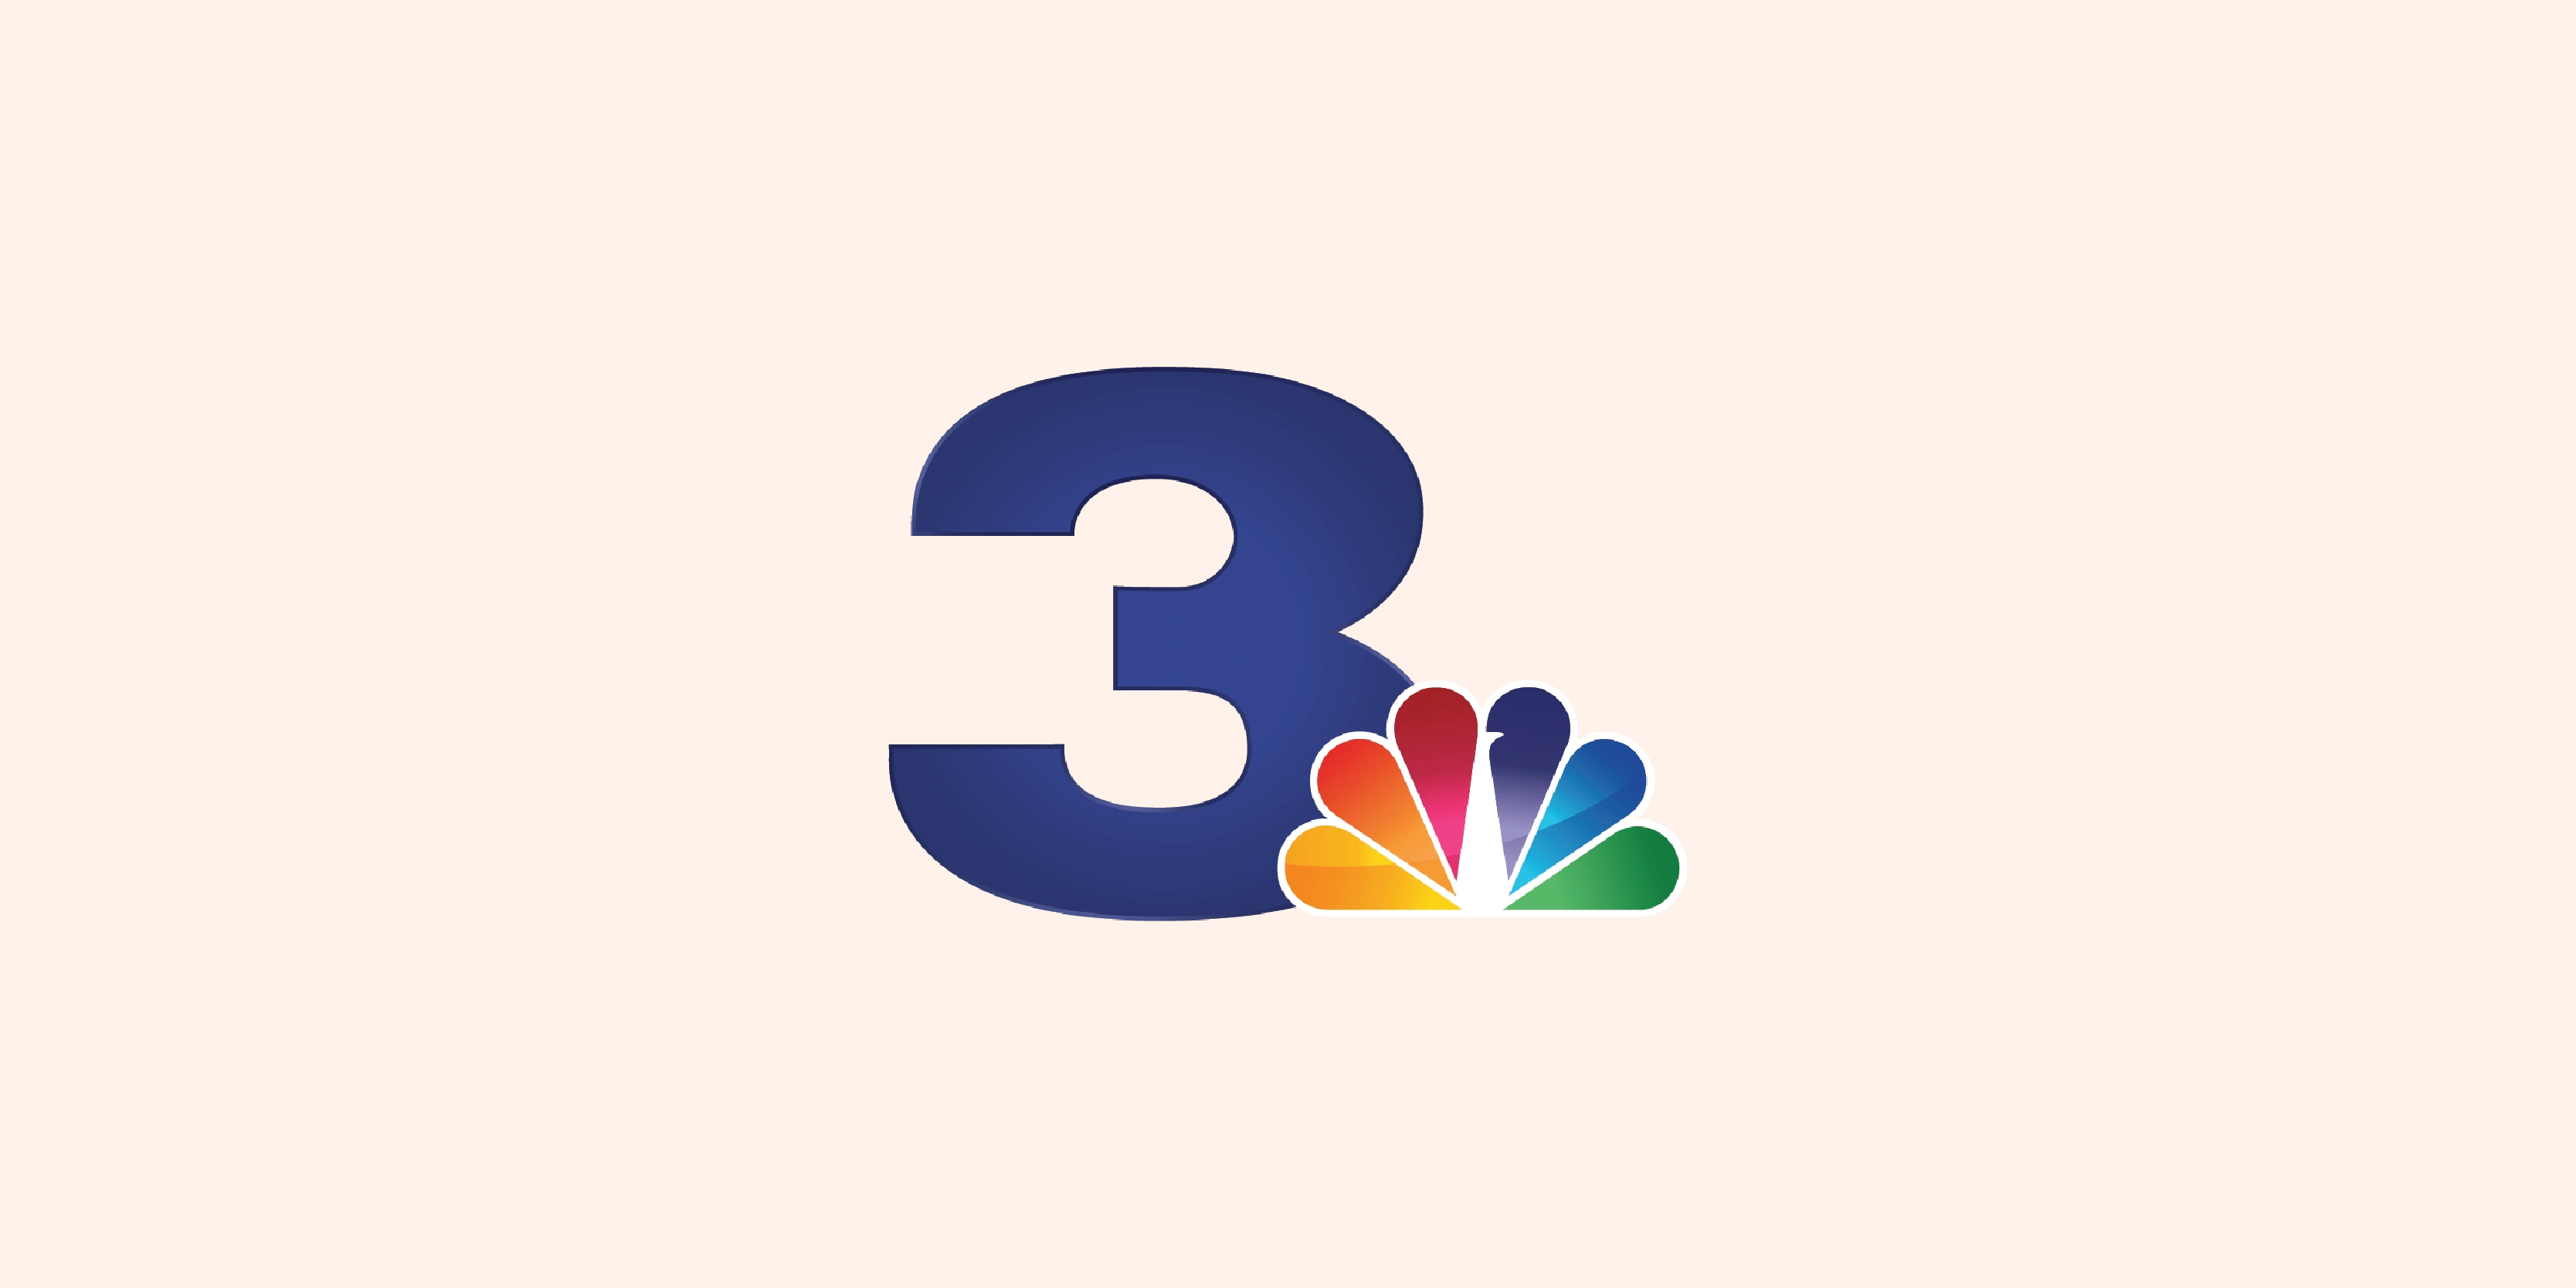 NBC 3 News